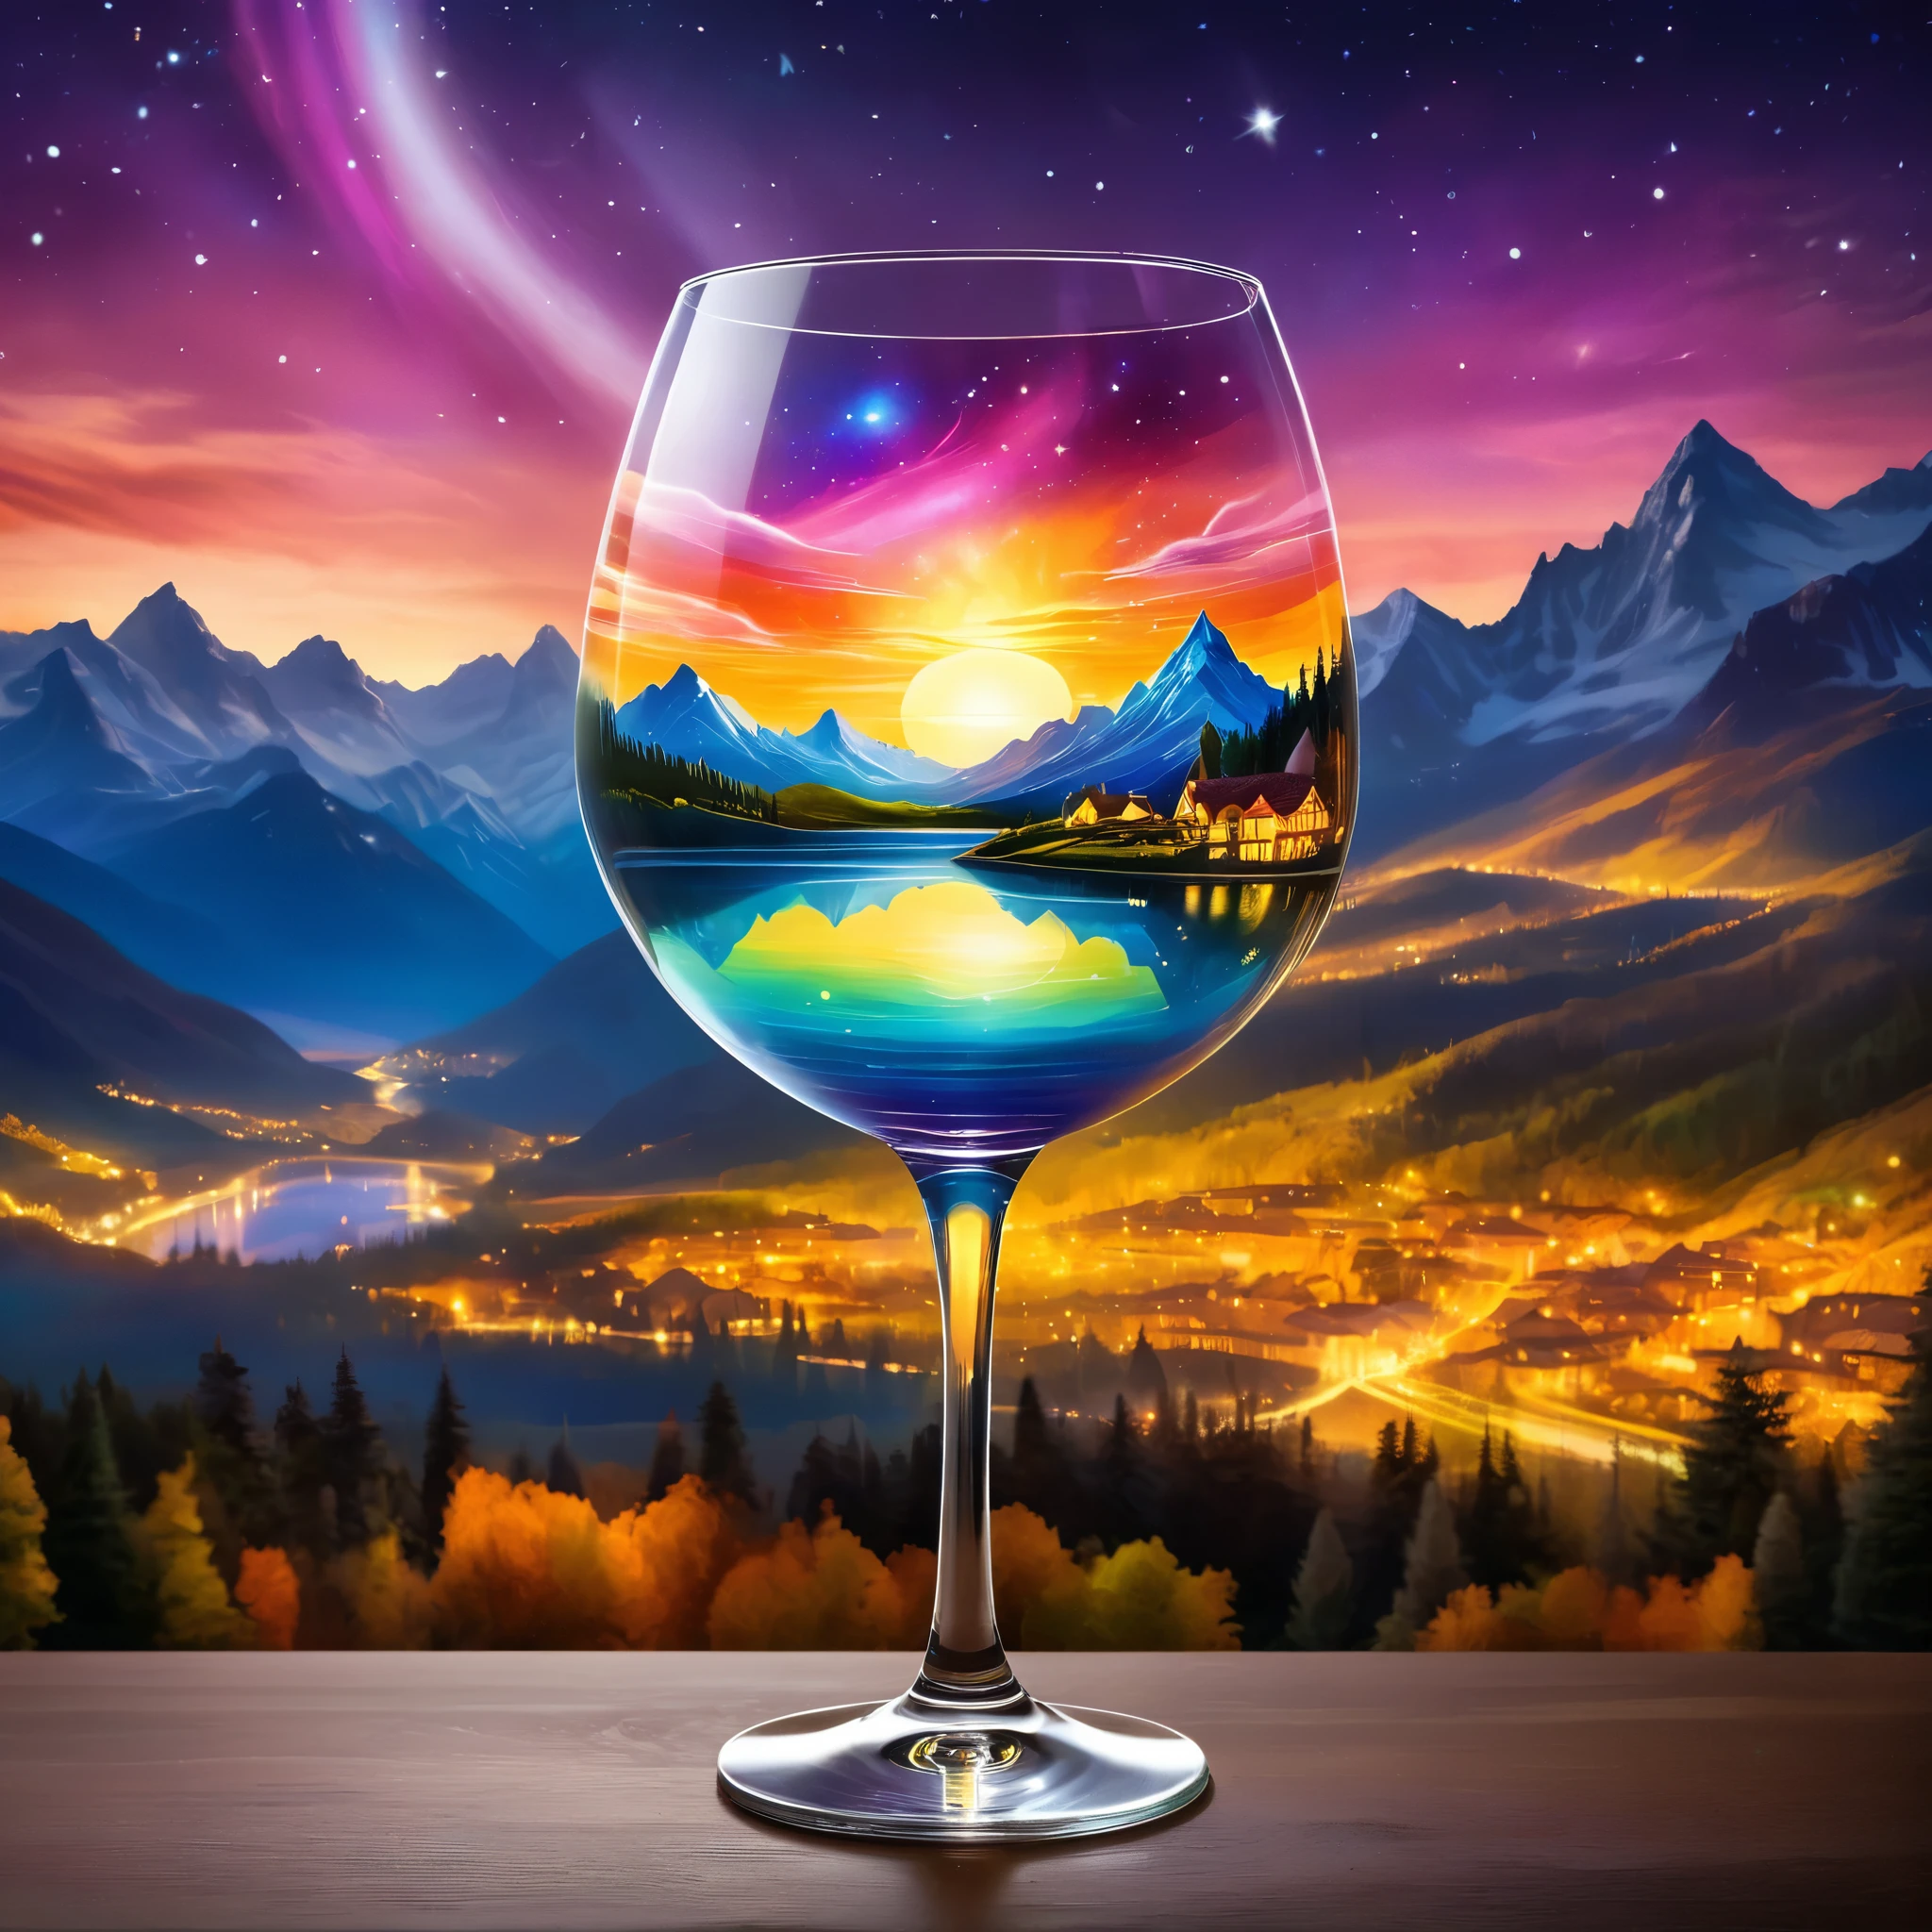 ワイングラスの中に天体シーンを創り出す, 山々とオーロラの空が広がるシュールな風景を描いた. 背景には輝く夕日と街並みが描かれている. スタイルは幻想的な要素を持つファンタジーであるべきである. 超リアルな写真, 非常に鮮やかな色, 16k